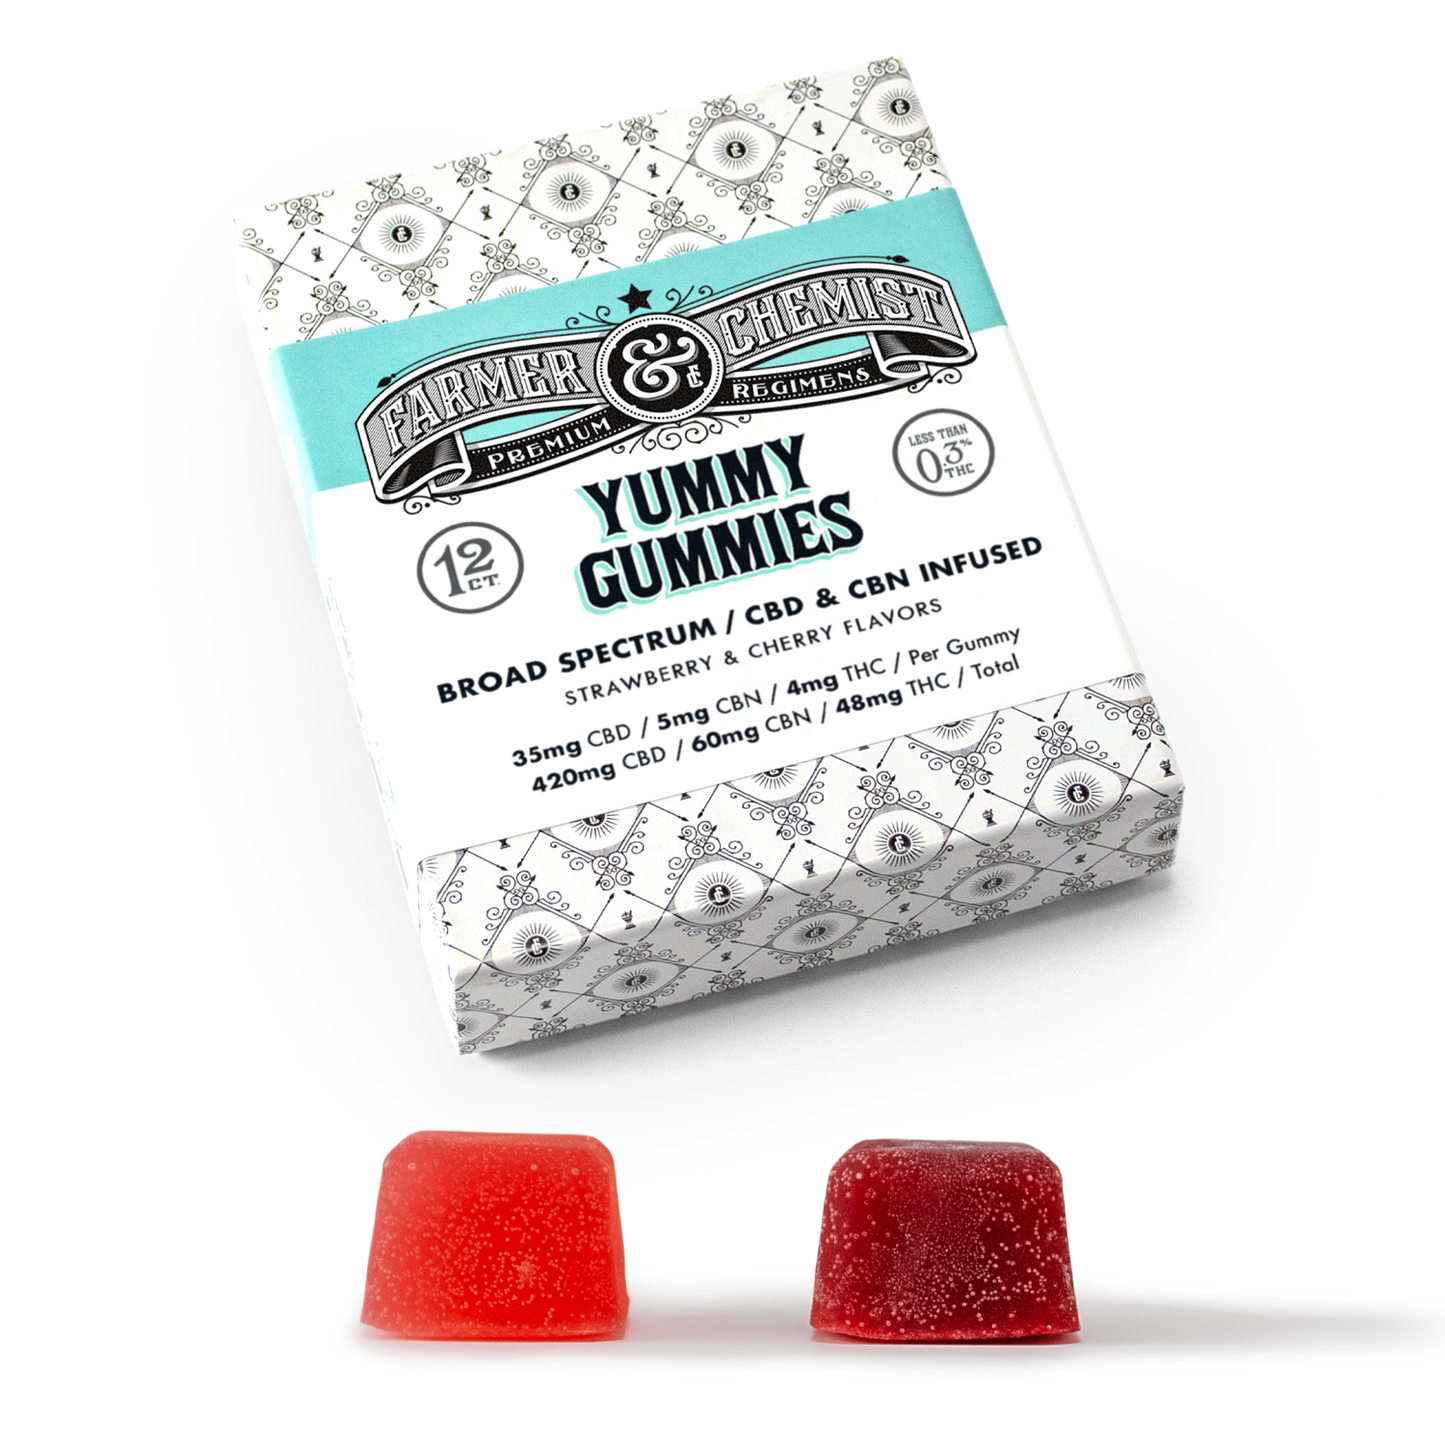 YUMMY GUMMIES - 12ct 35mg CBD / 5mg CBN / 4mg THC Gummies